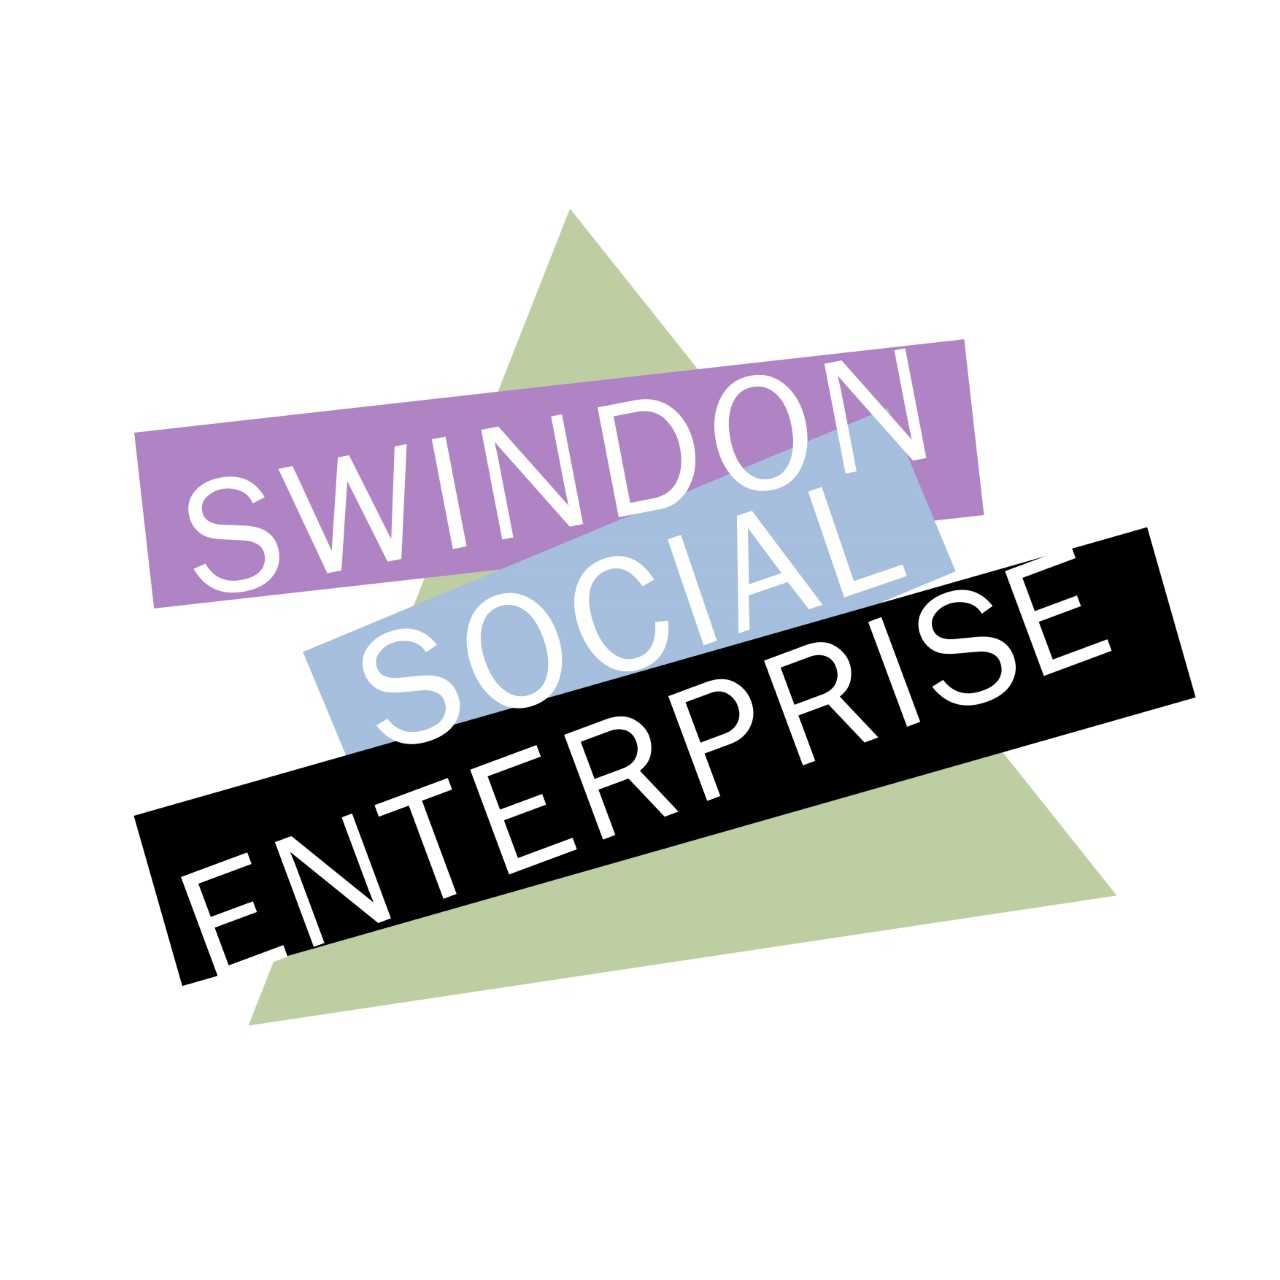 Entrepreneur James Phipps Comments on Swindon Social Enterprise Network